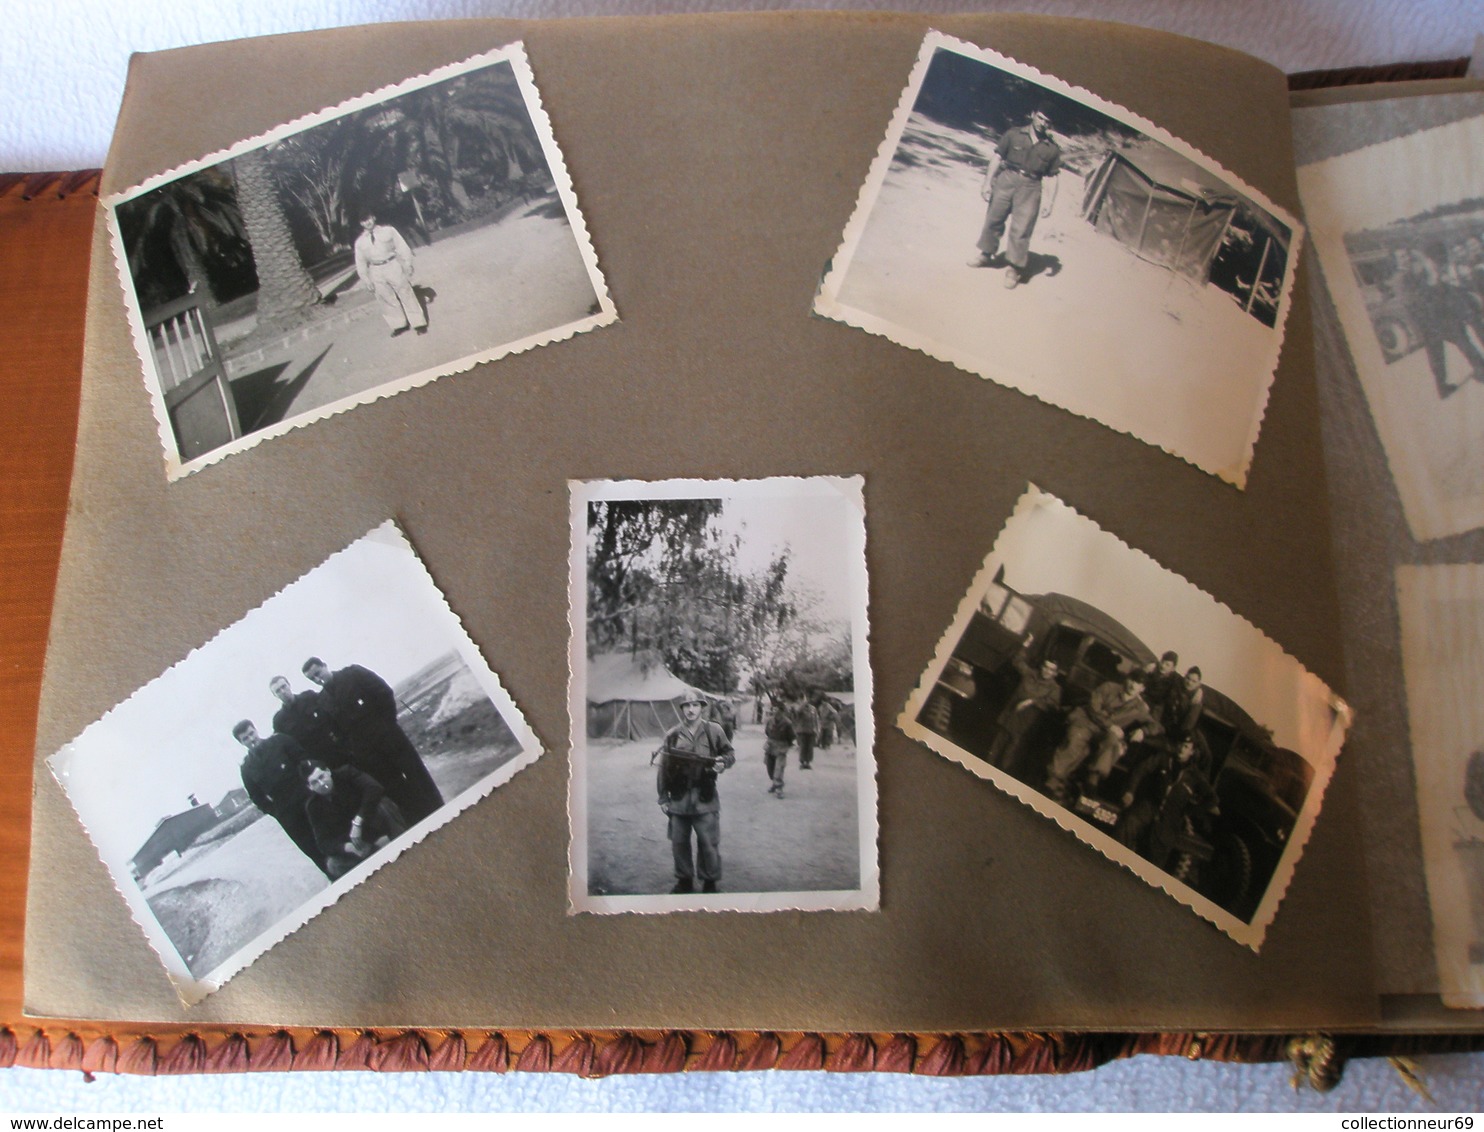 Ancien Album photos d'un Soldat Français pendant la Guerre d'Algérie 68 photos d'époque // en état moyen